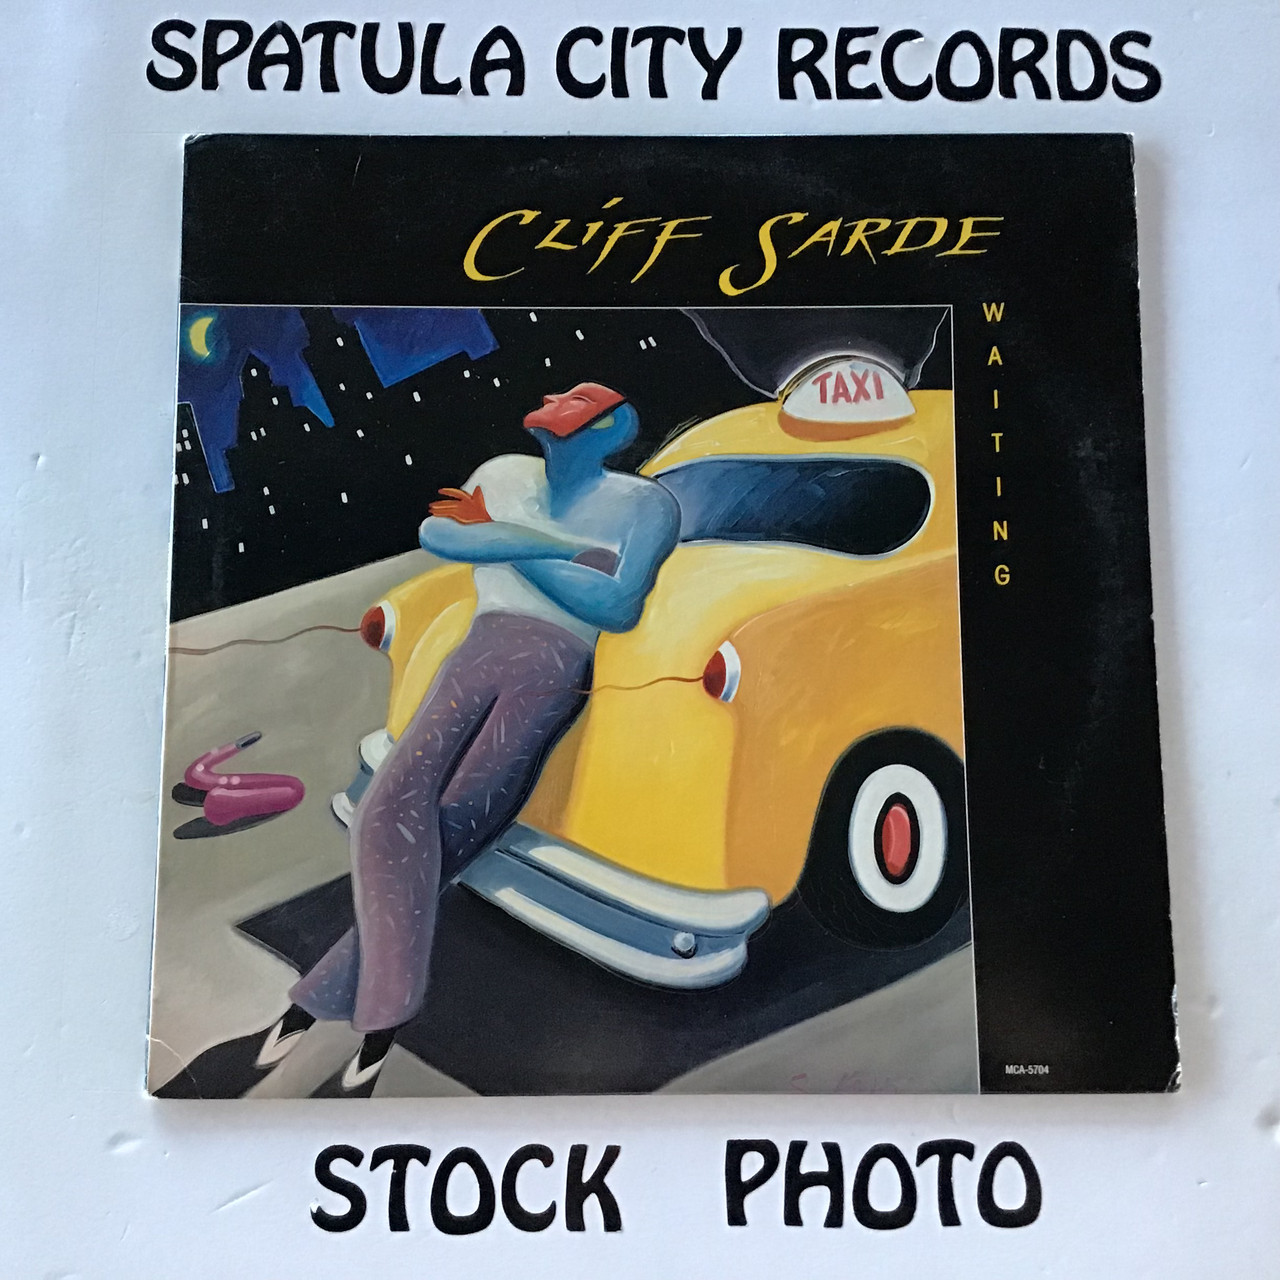 Cliff Sarde - Waiting - vinyl record album LP